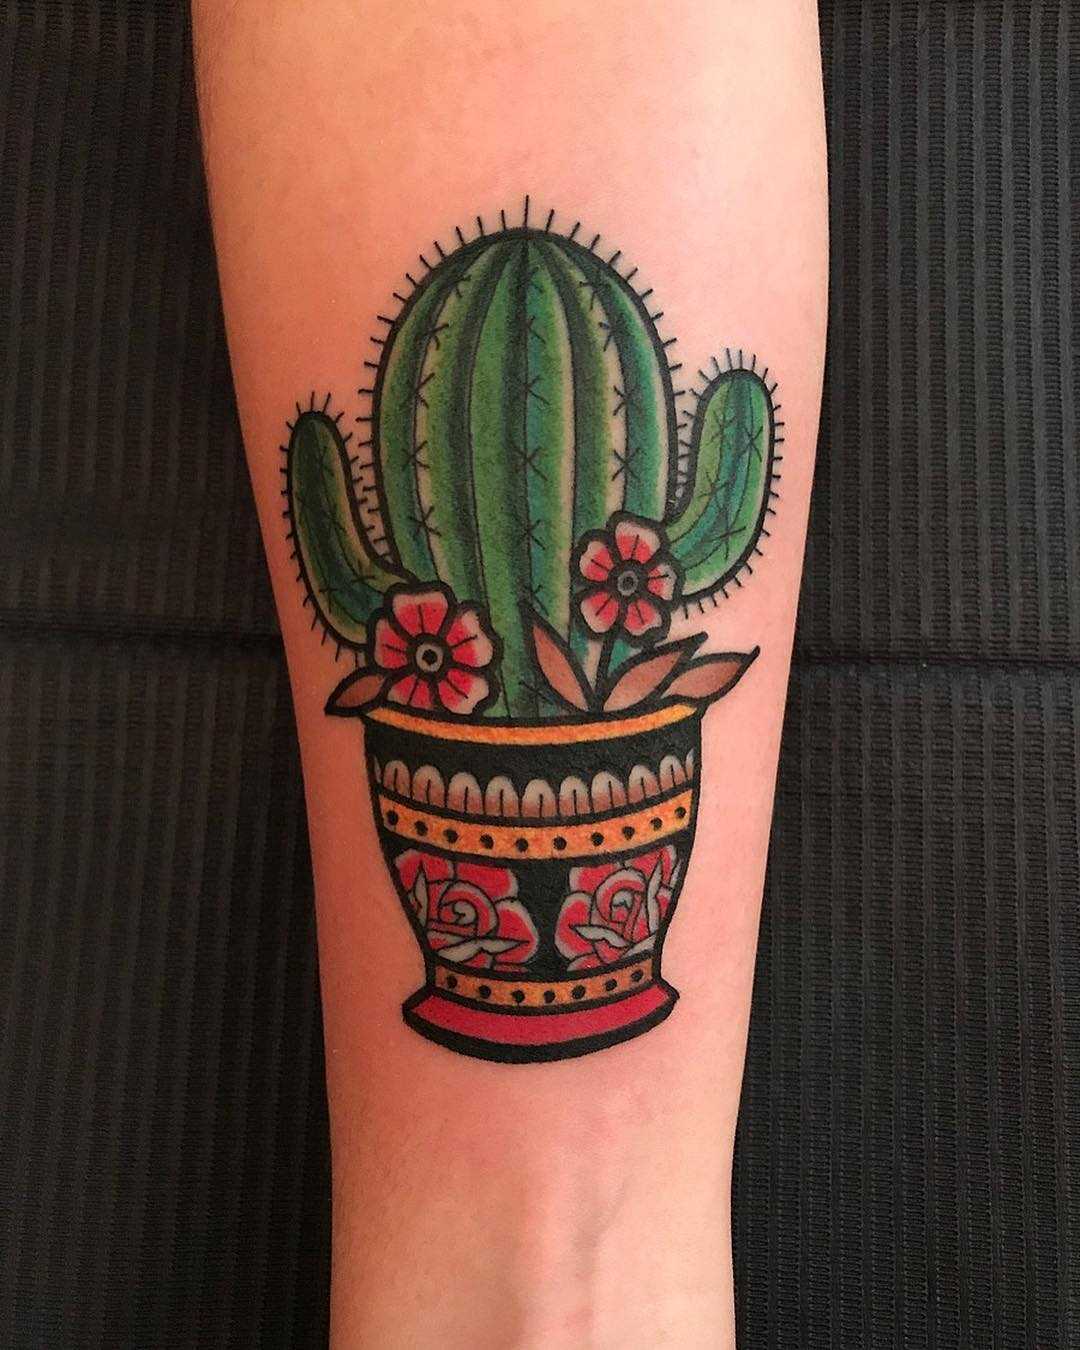 Cactus in a pot by tattooist Alejo GMZ